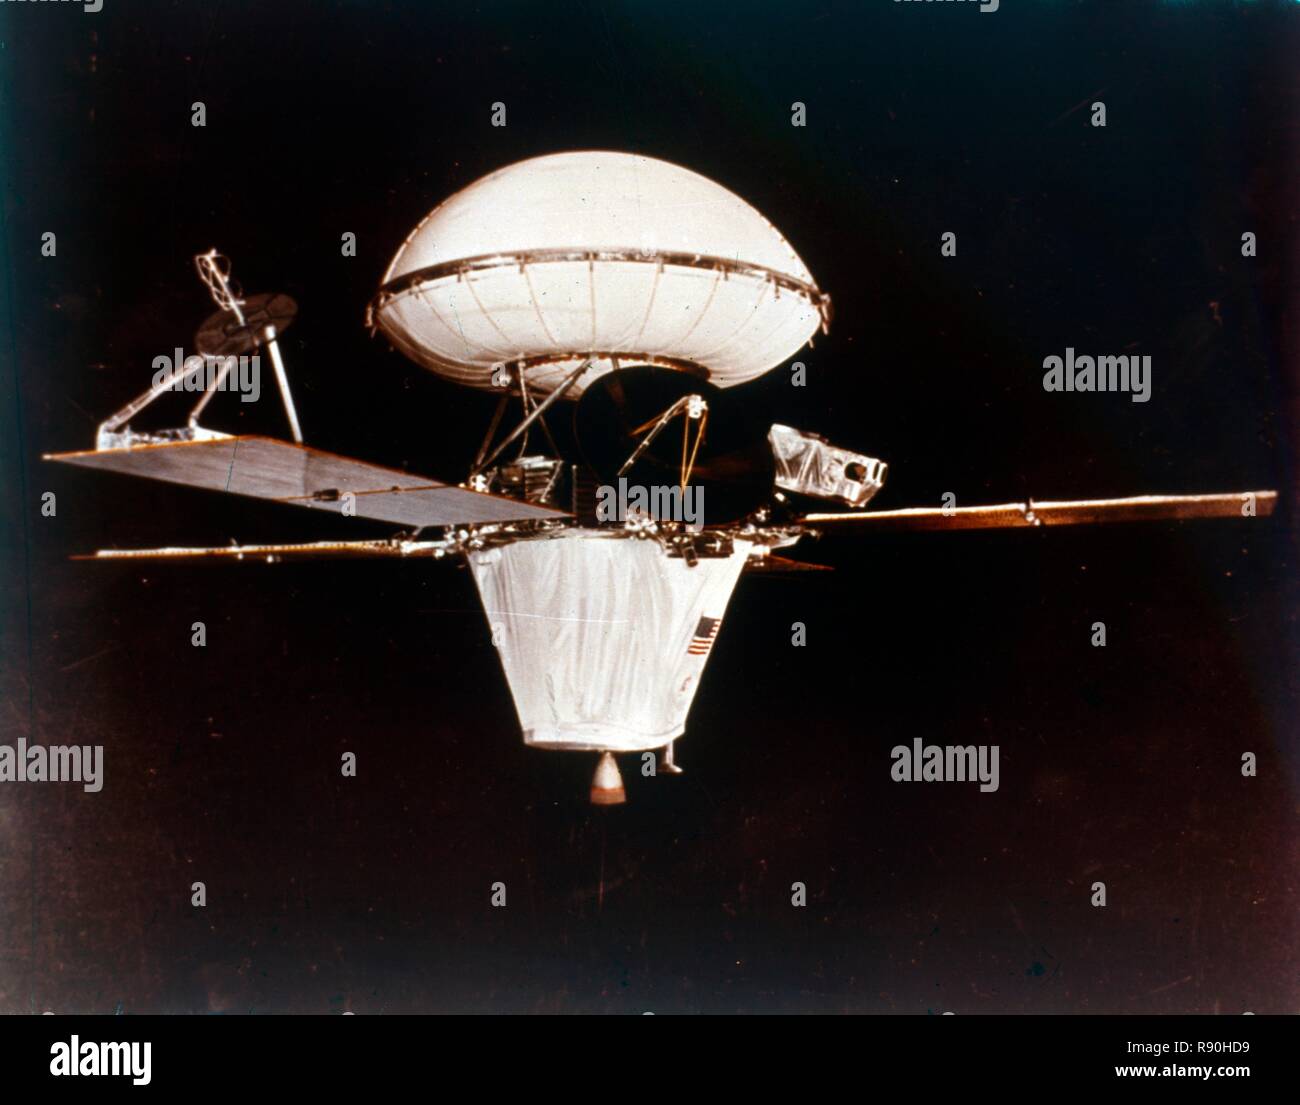 Viking spacecraft, 1970s. Creator: NASA. Stock Photo